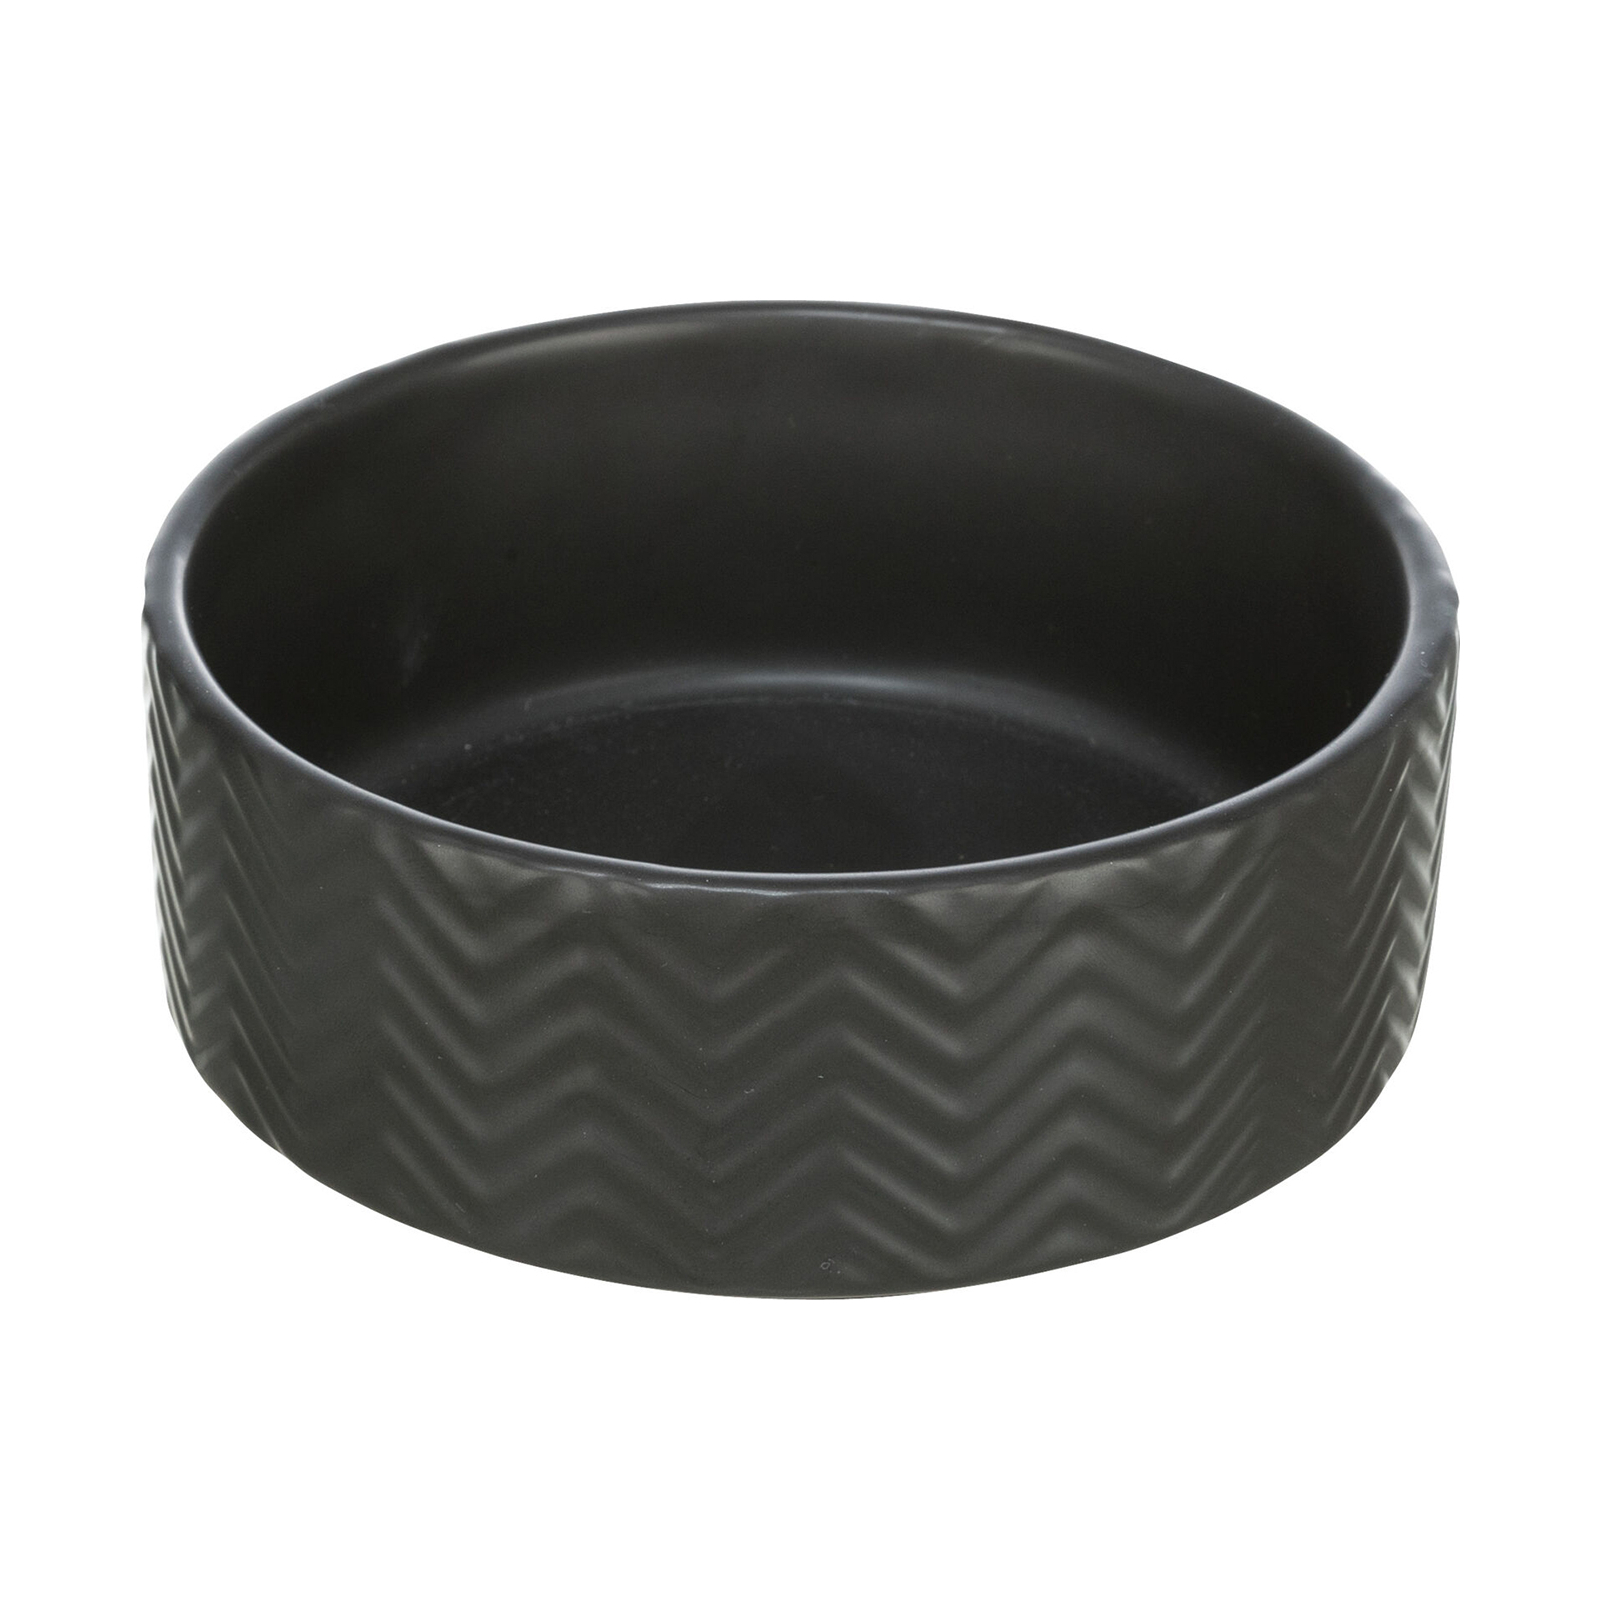 Посуда для собак Trixie Миска керамическая 1.6 л/20 см (черная) (4047974250228)